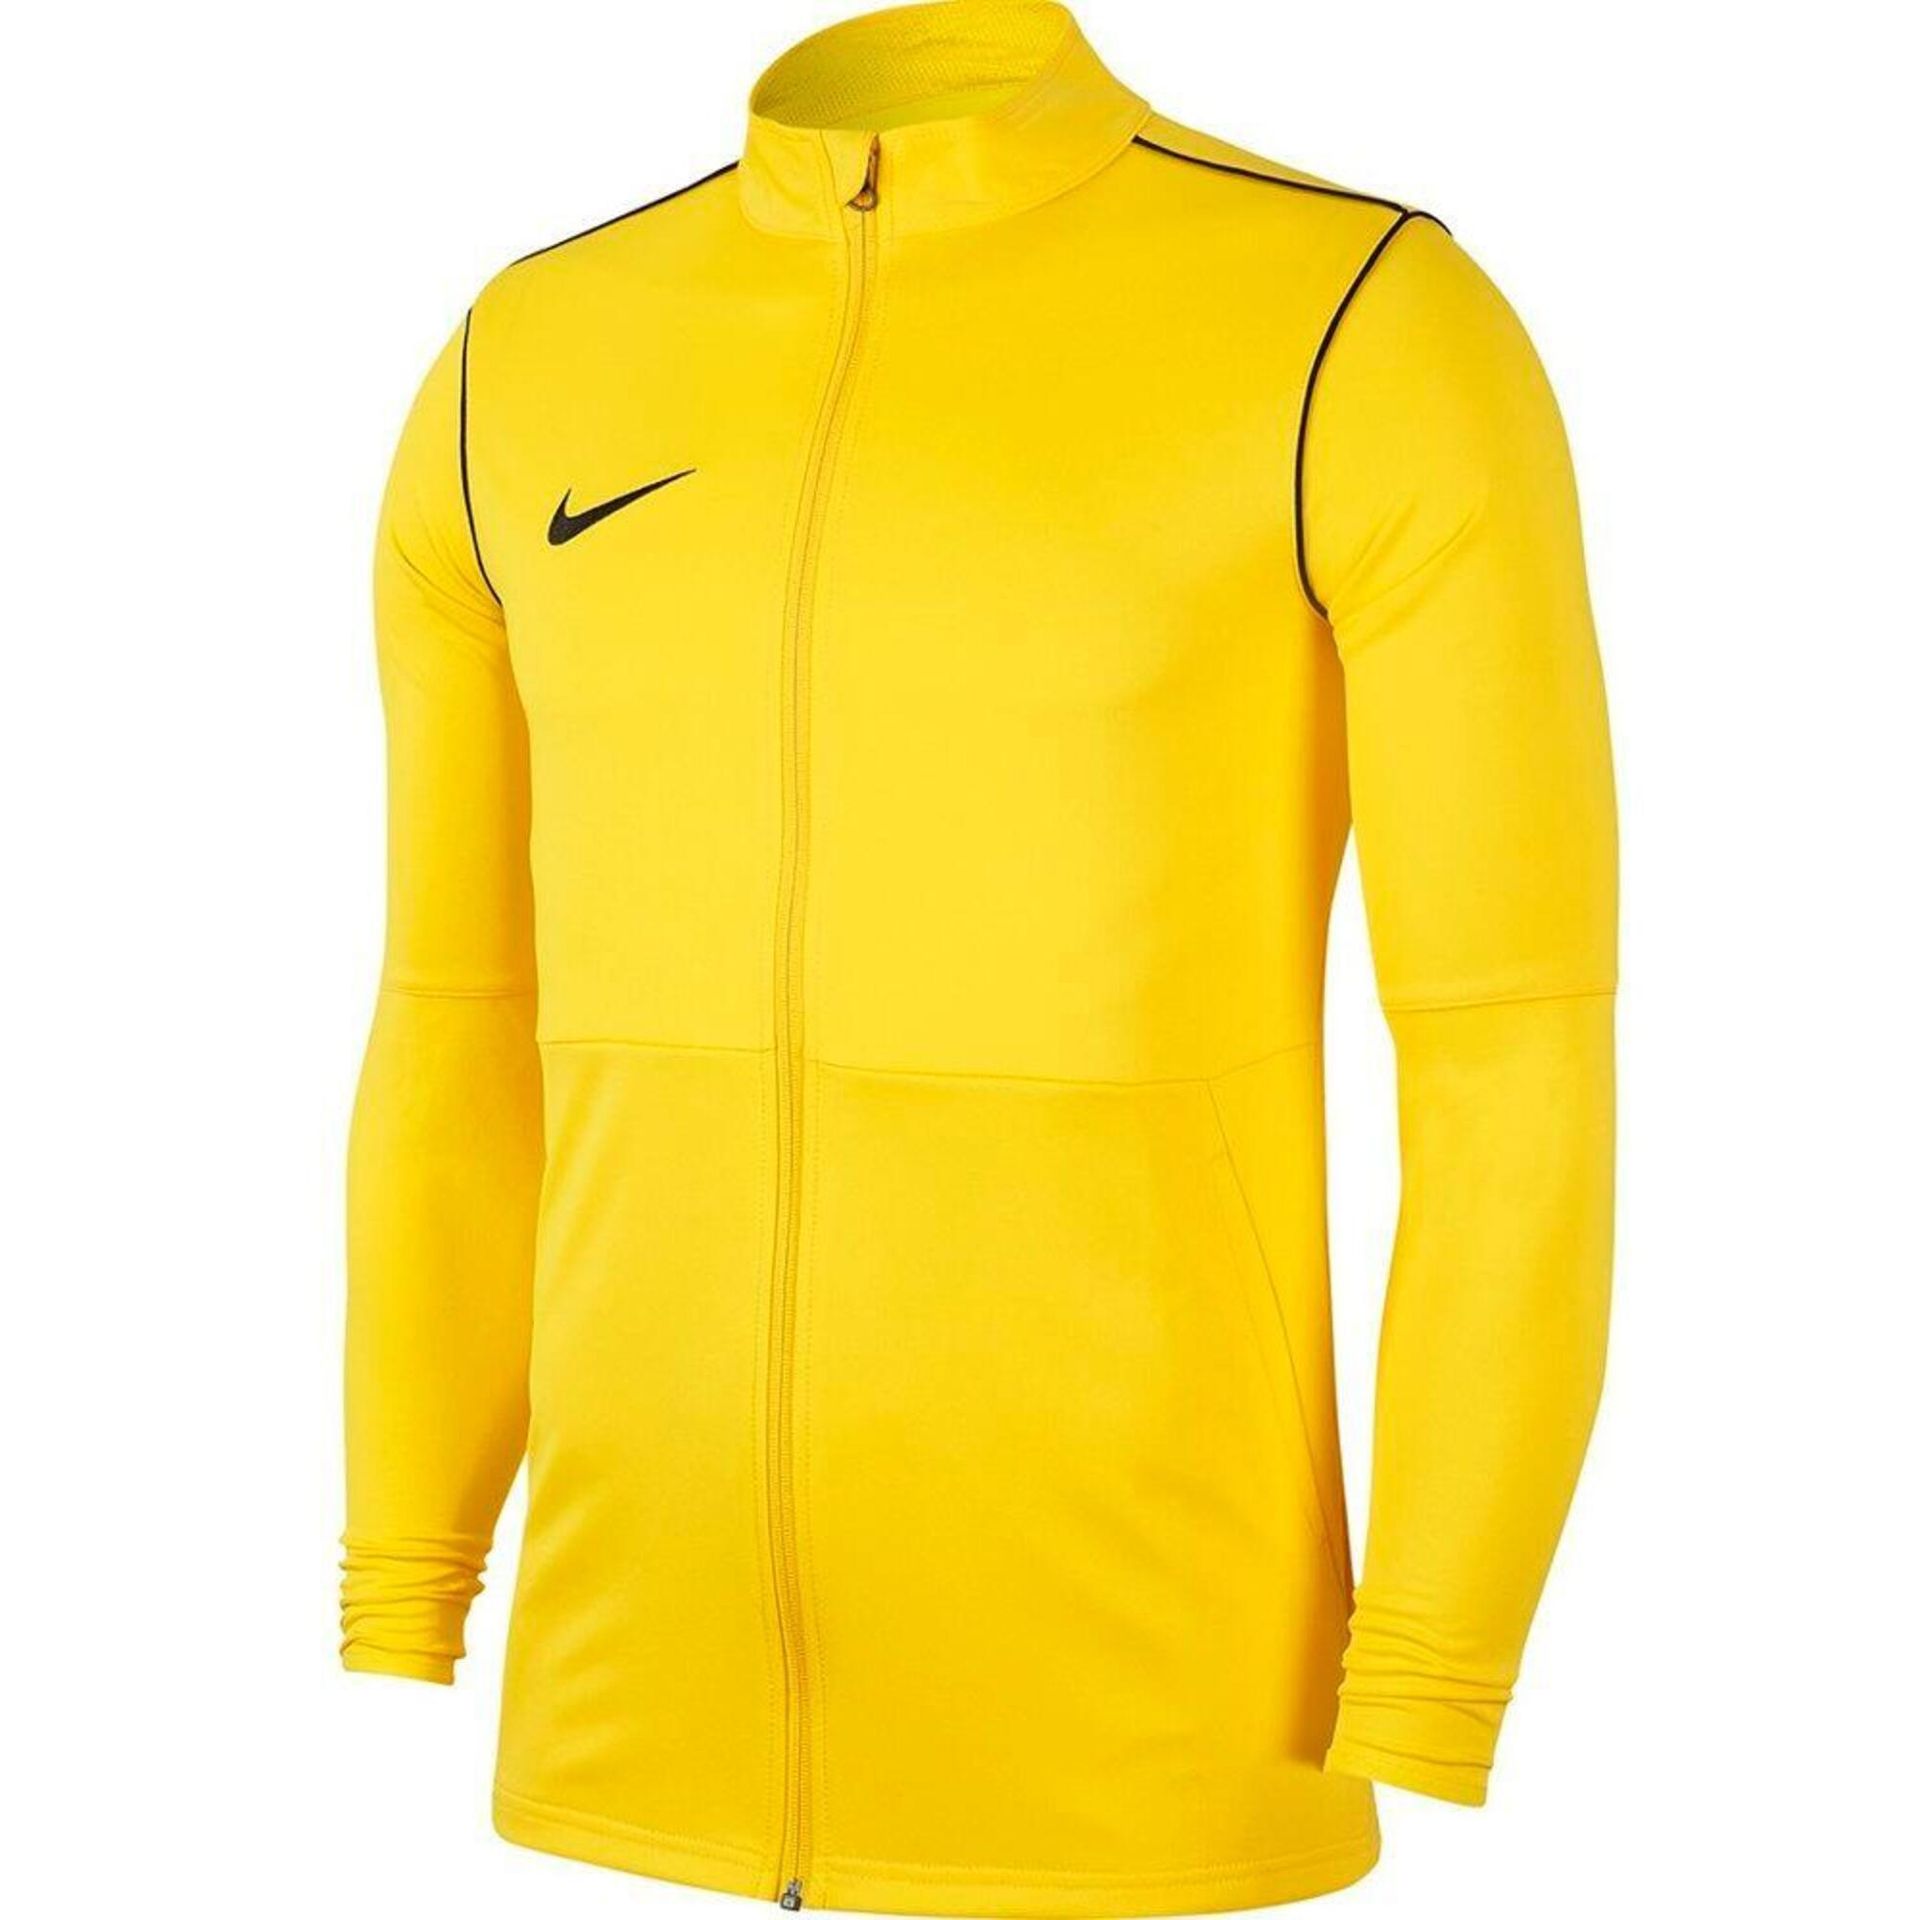 Bluza dla dzieci Nike Dry Park 20 TRK JKT K Junior żółta BV6906 719